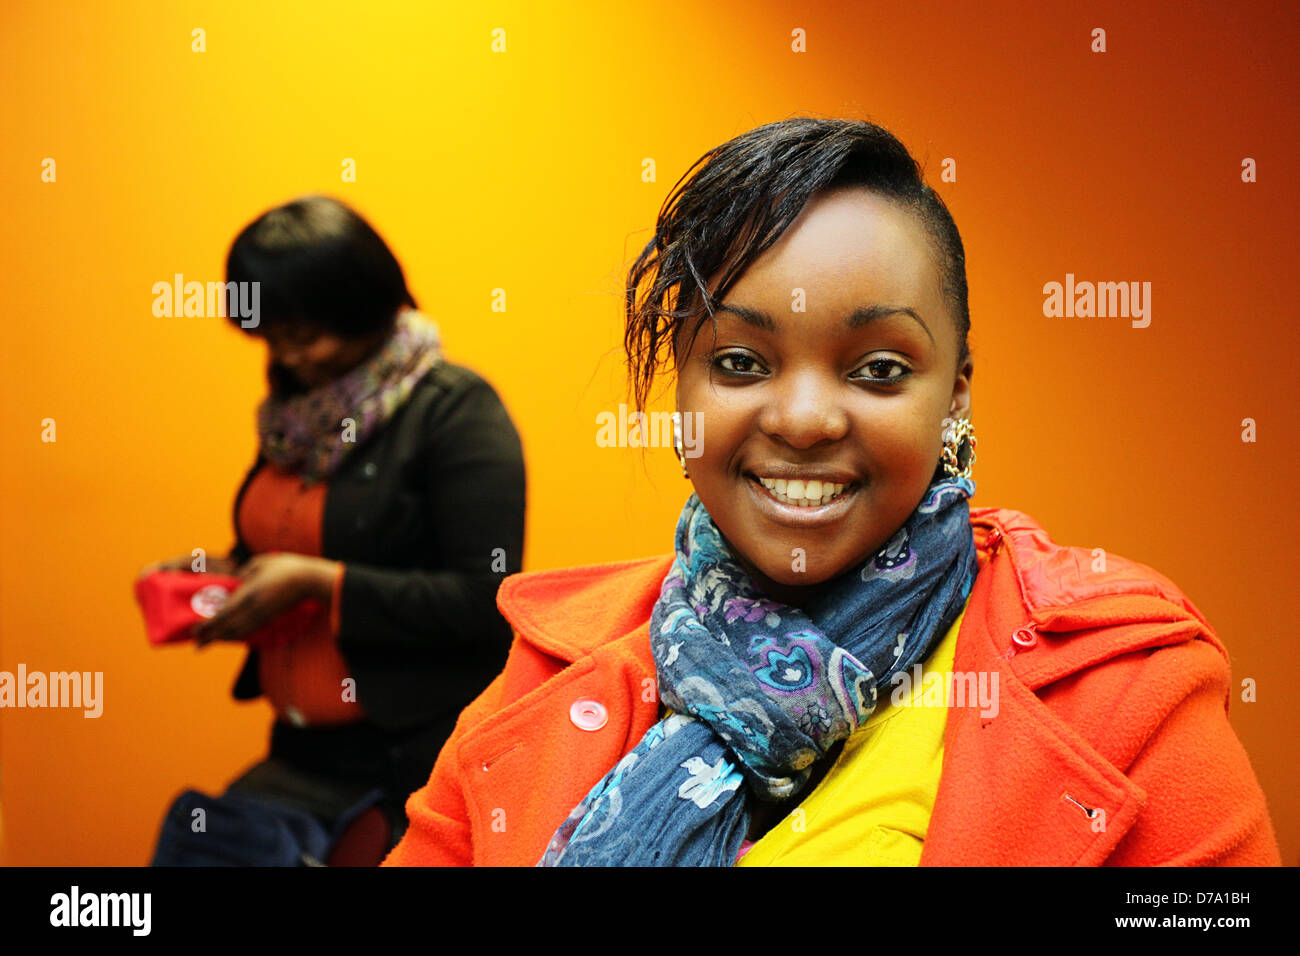 South African woman smiling contre un fond orange et jaune. Banque D'Images